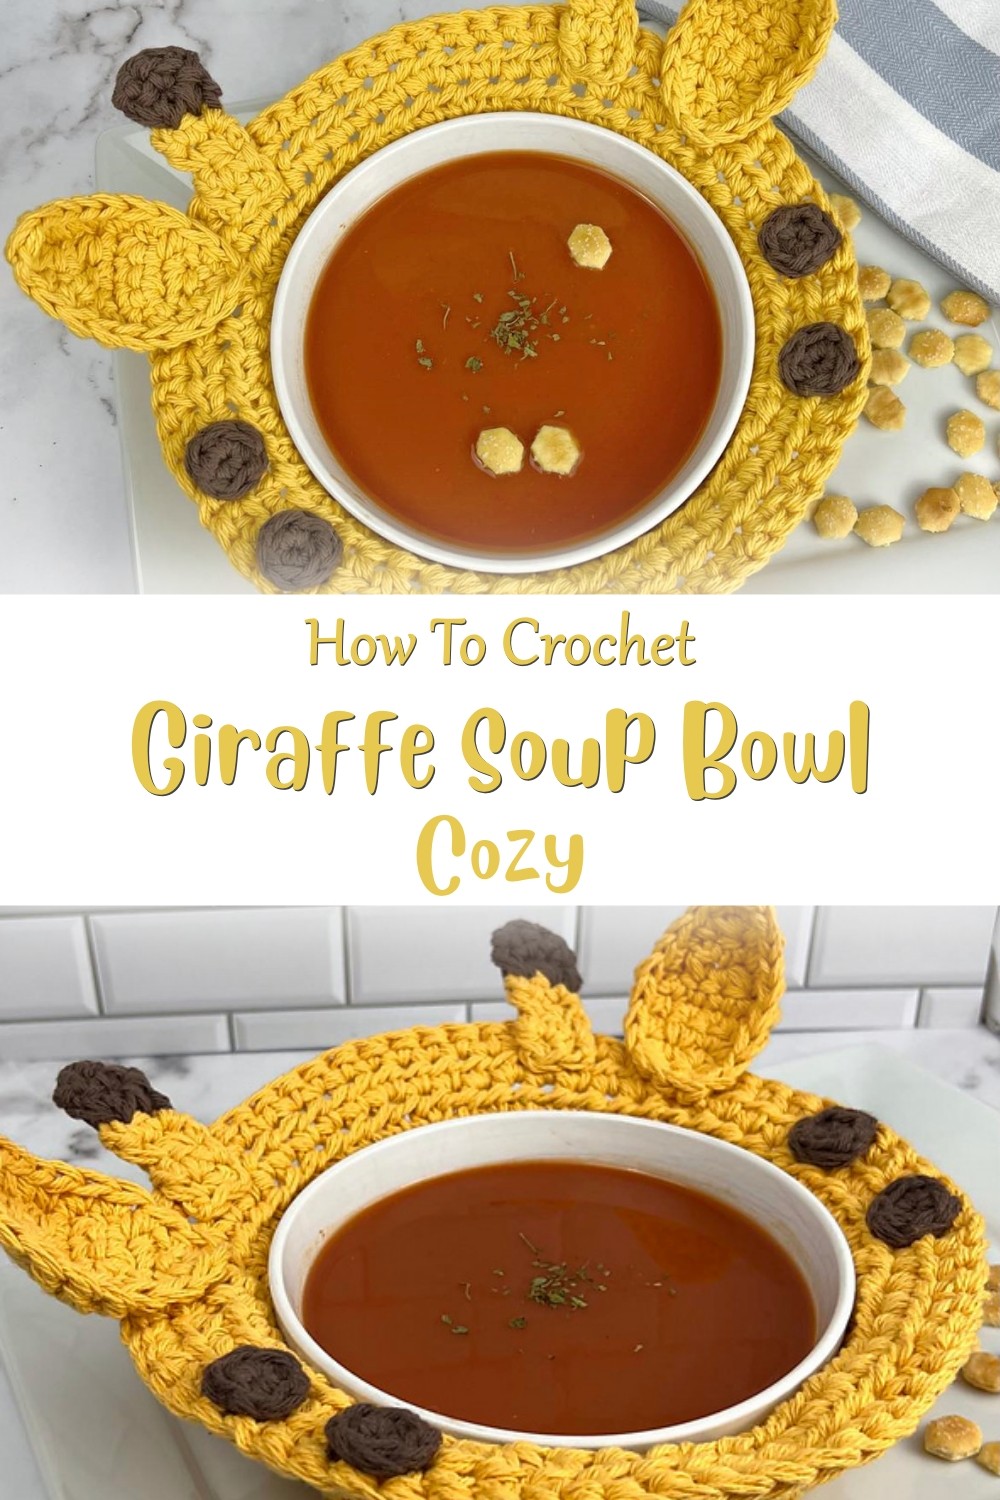 Soup Bowl Cozy Pattern